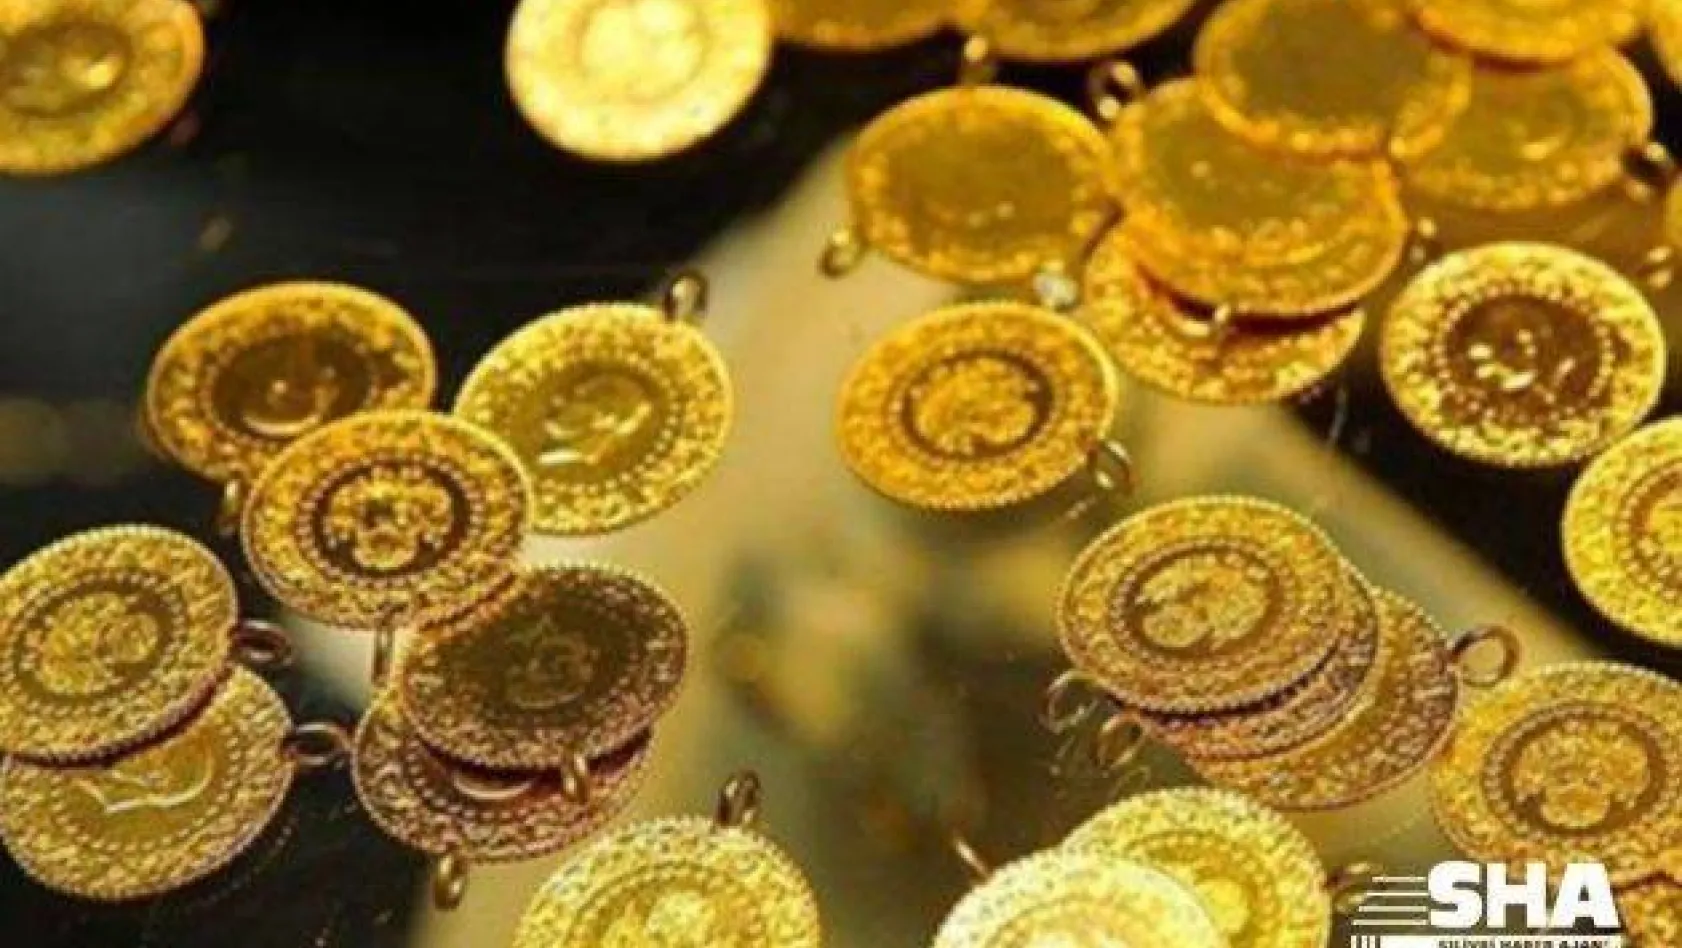 Darphane'den altın açıklaması: Piyasada altın arzında sorun yok